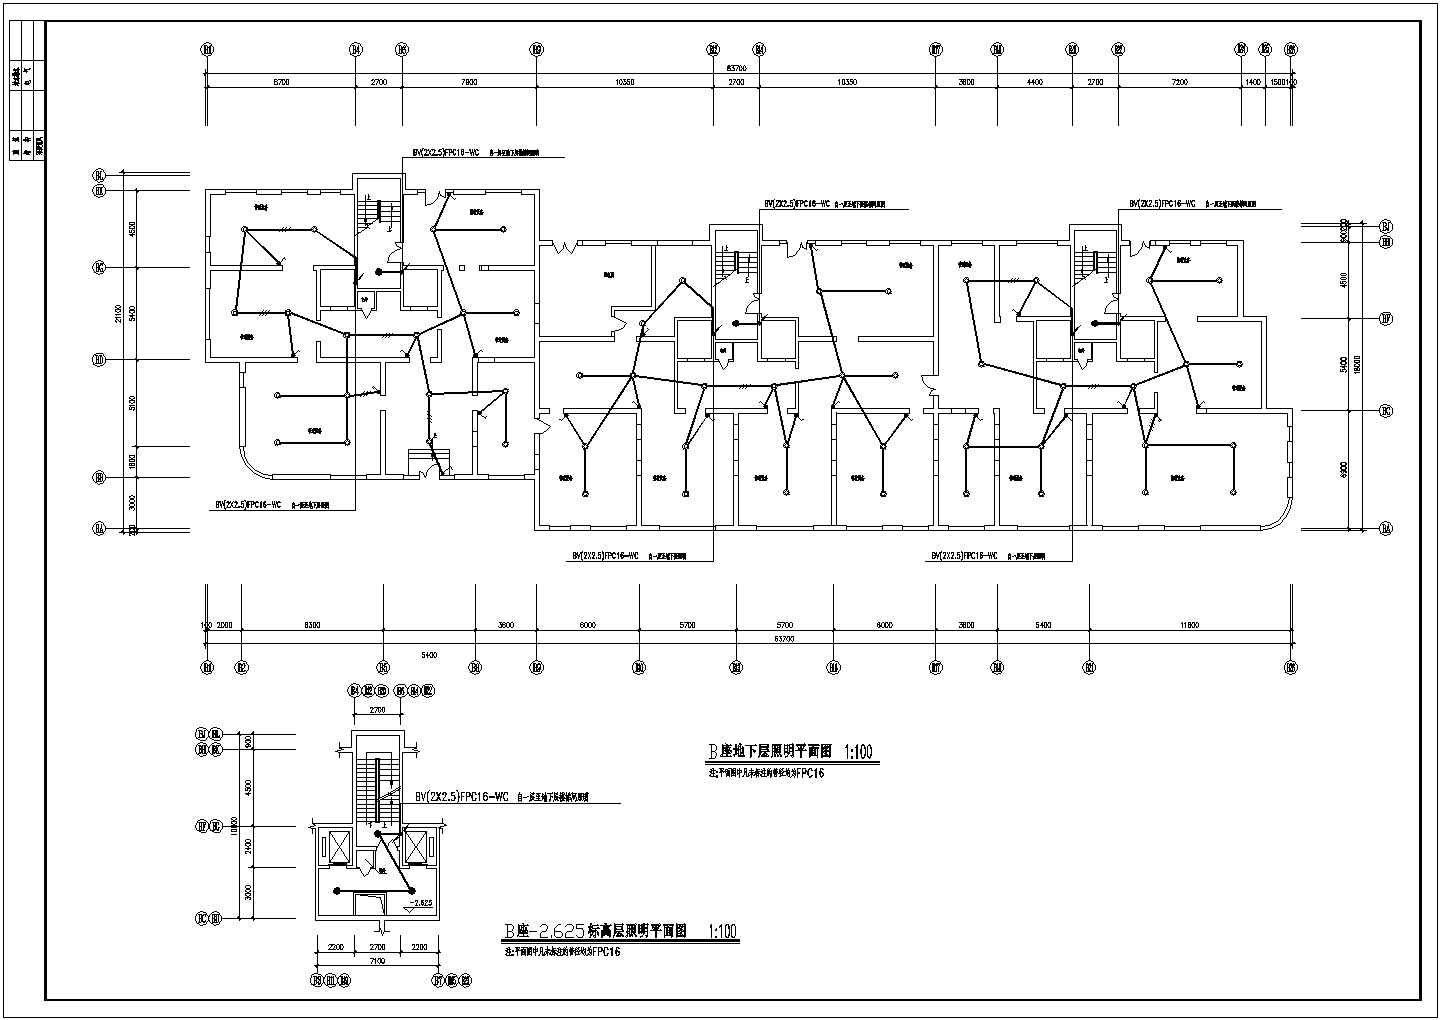 B座正常照明电气设计方案及施工全套CAD图纸